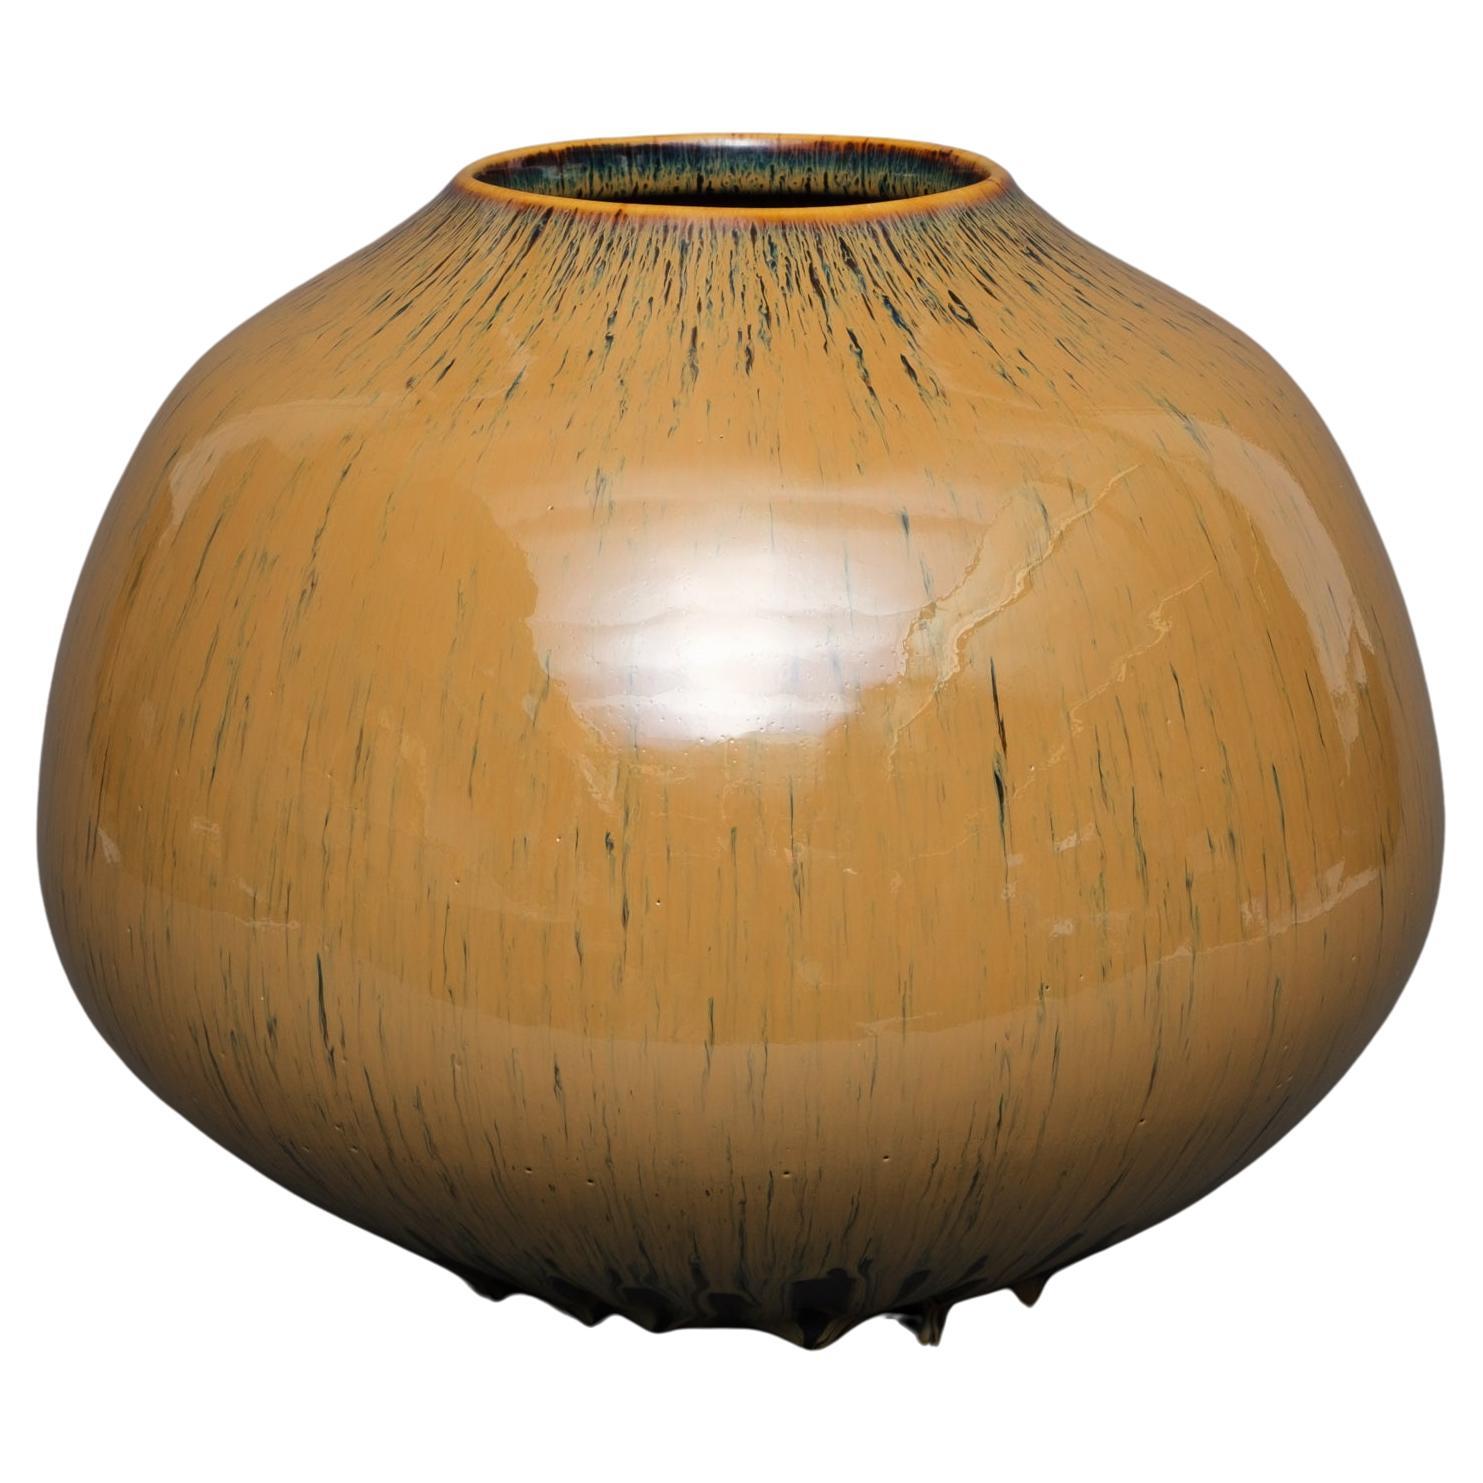 Japanese vase with brown dripping glaze by Yamamoto Seinen 山本正年 (1912-1986)